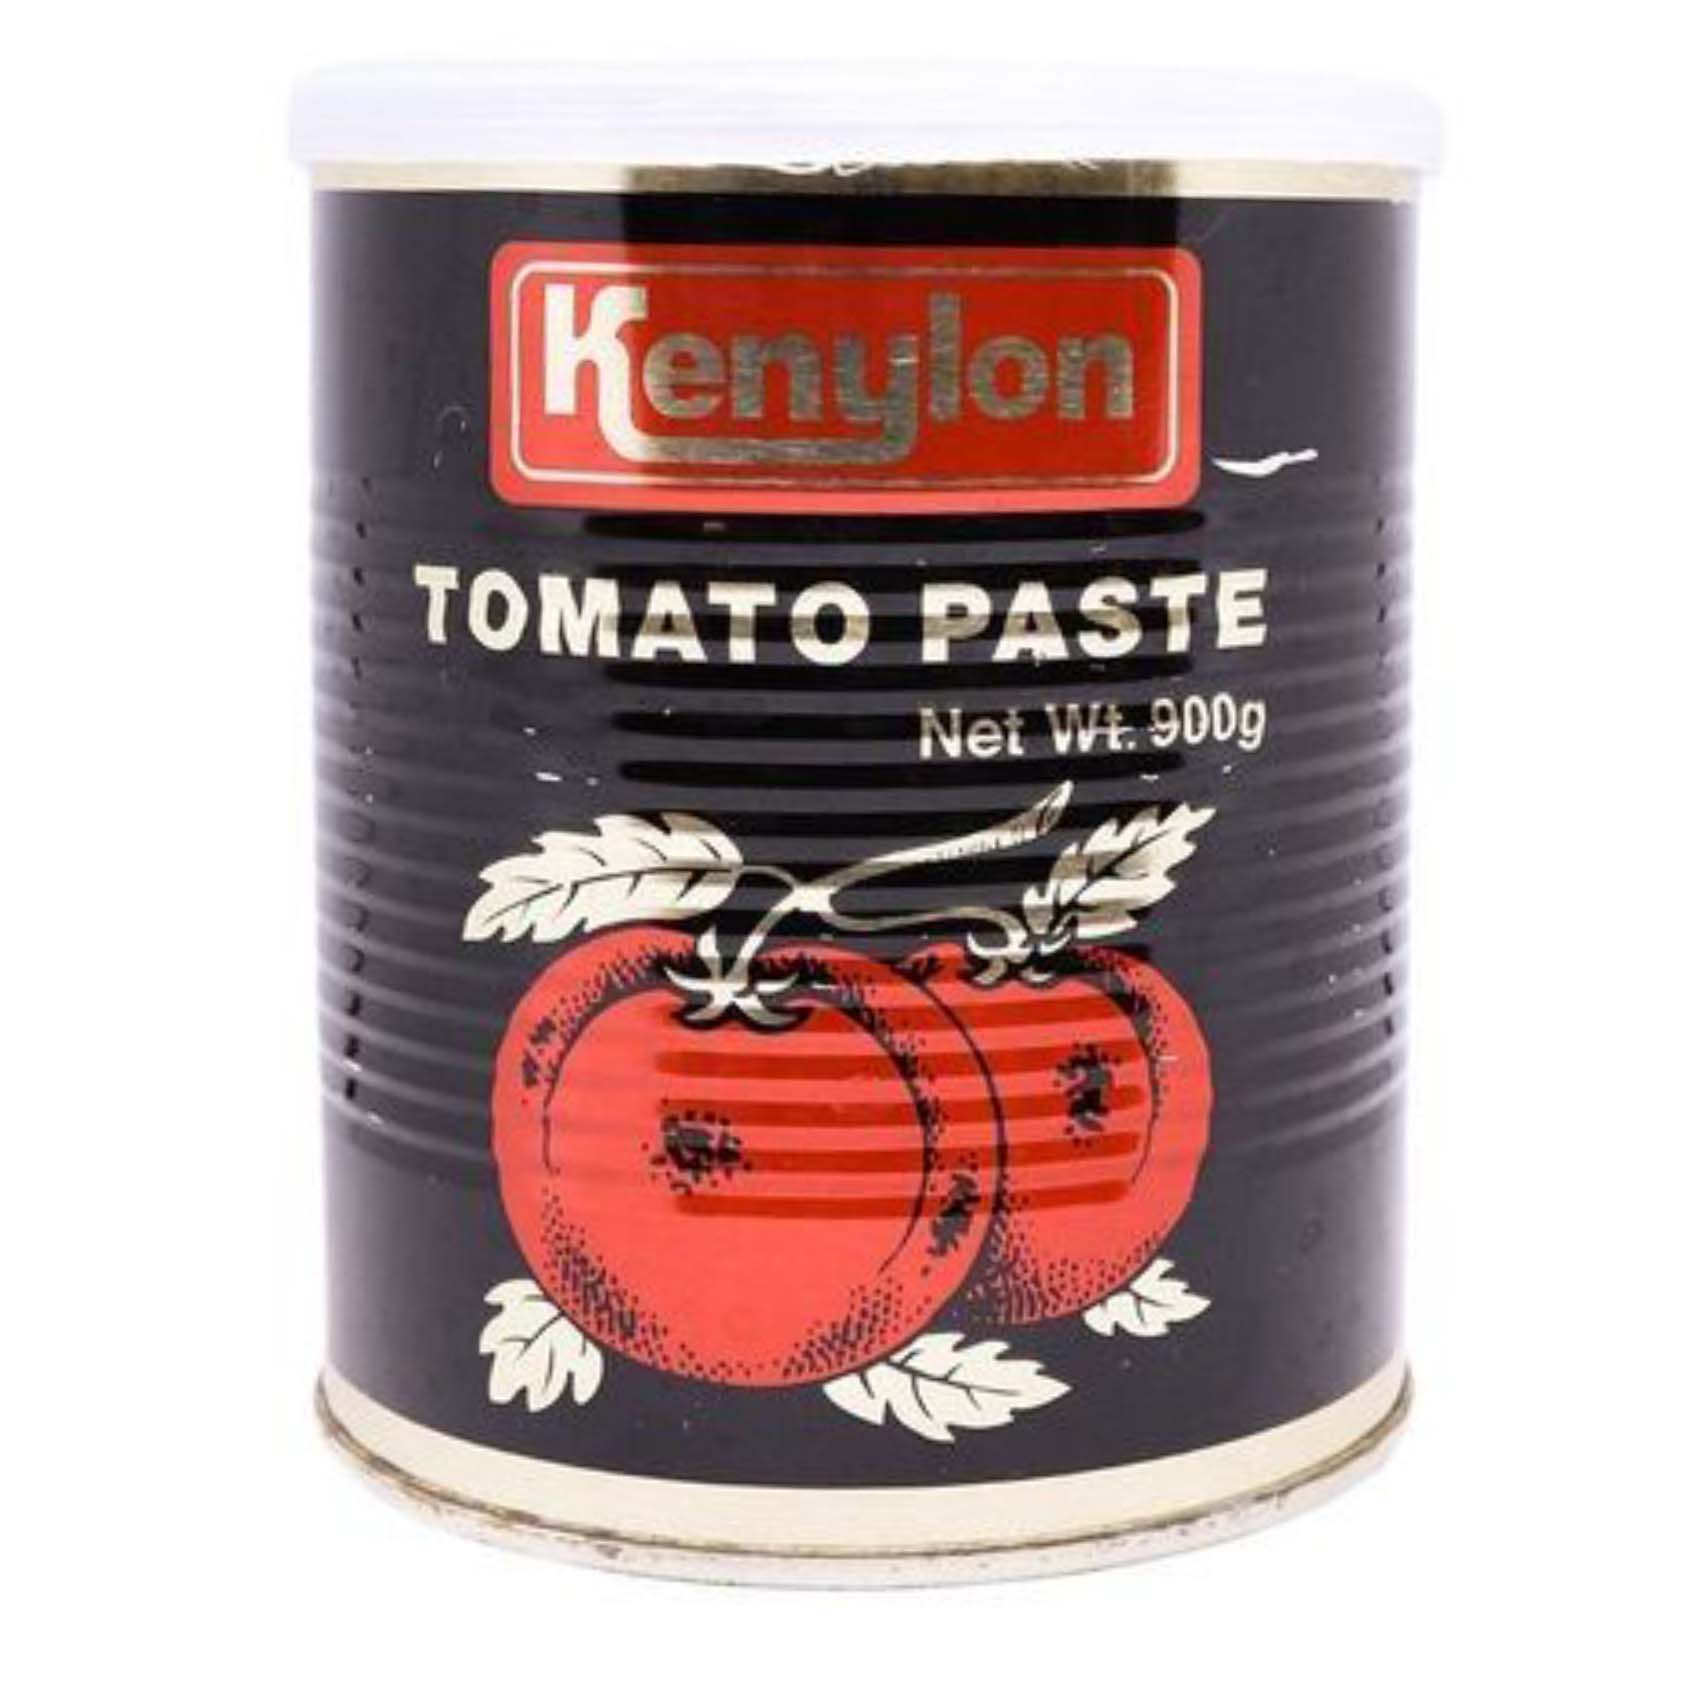 Kenylon Tomato Paste 900g